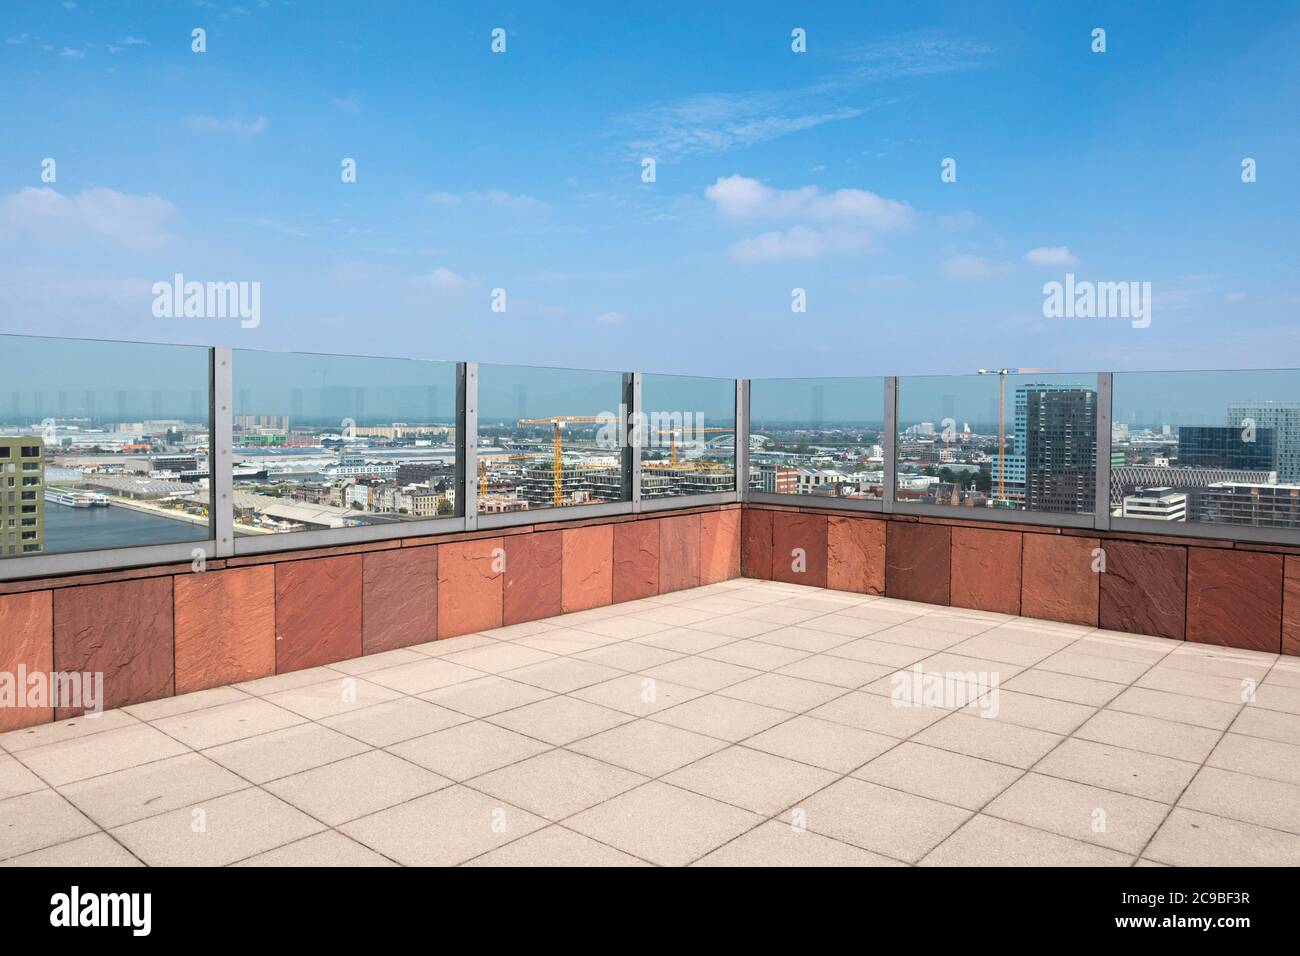 Anvers, Belgique, 19 juillet 2020, photo du toit du musée sur la rivière appelée MAS avec vue panoramique Banque D'Images